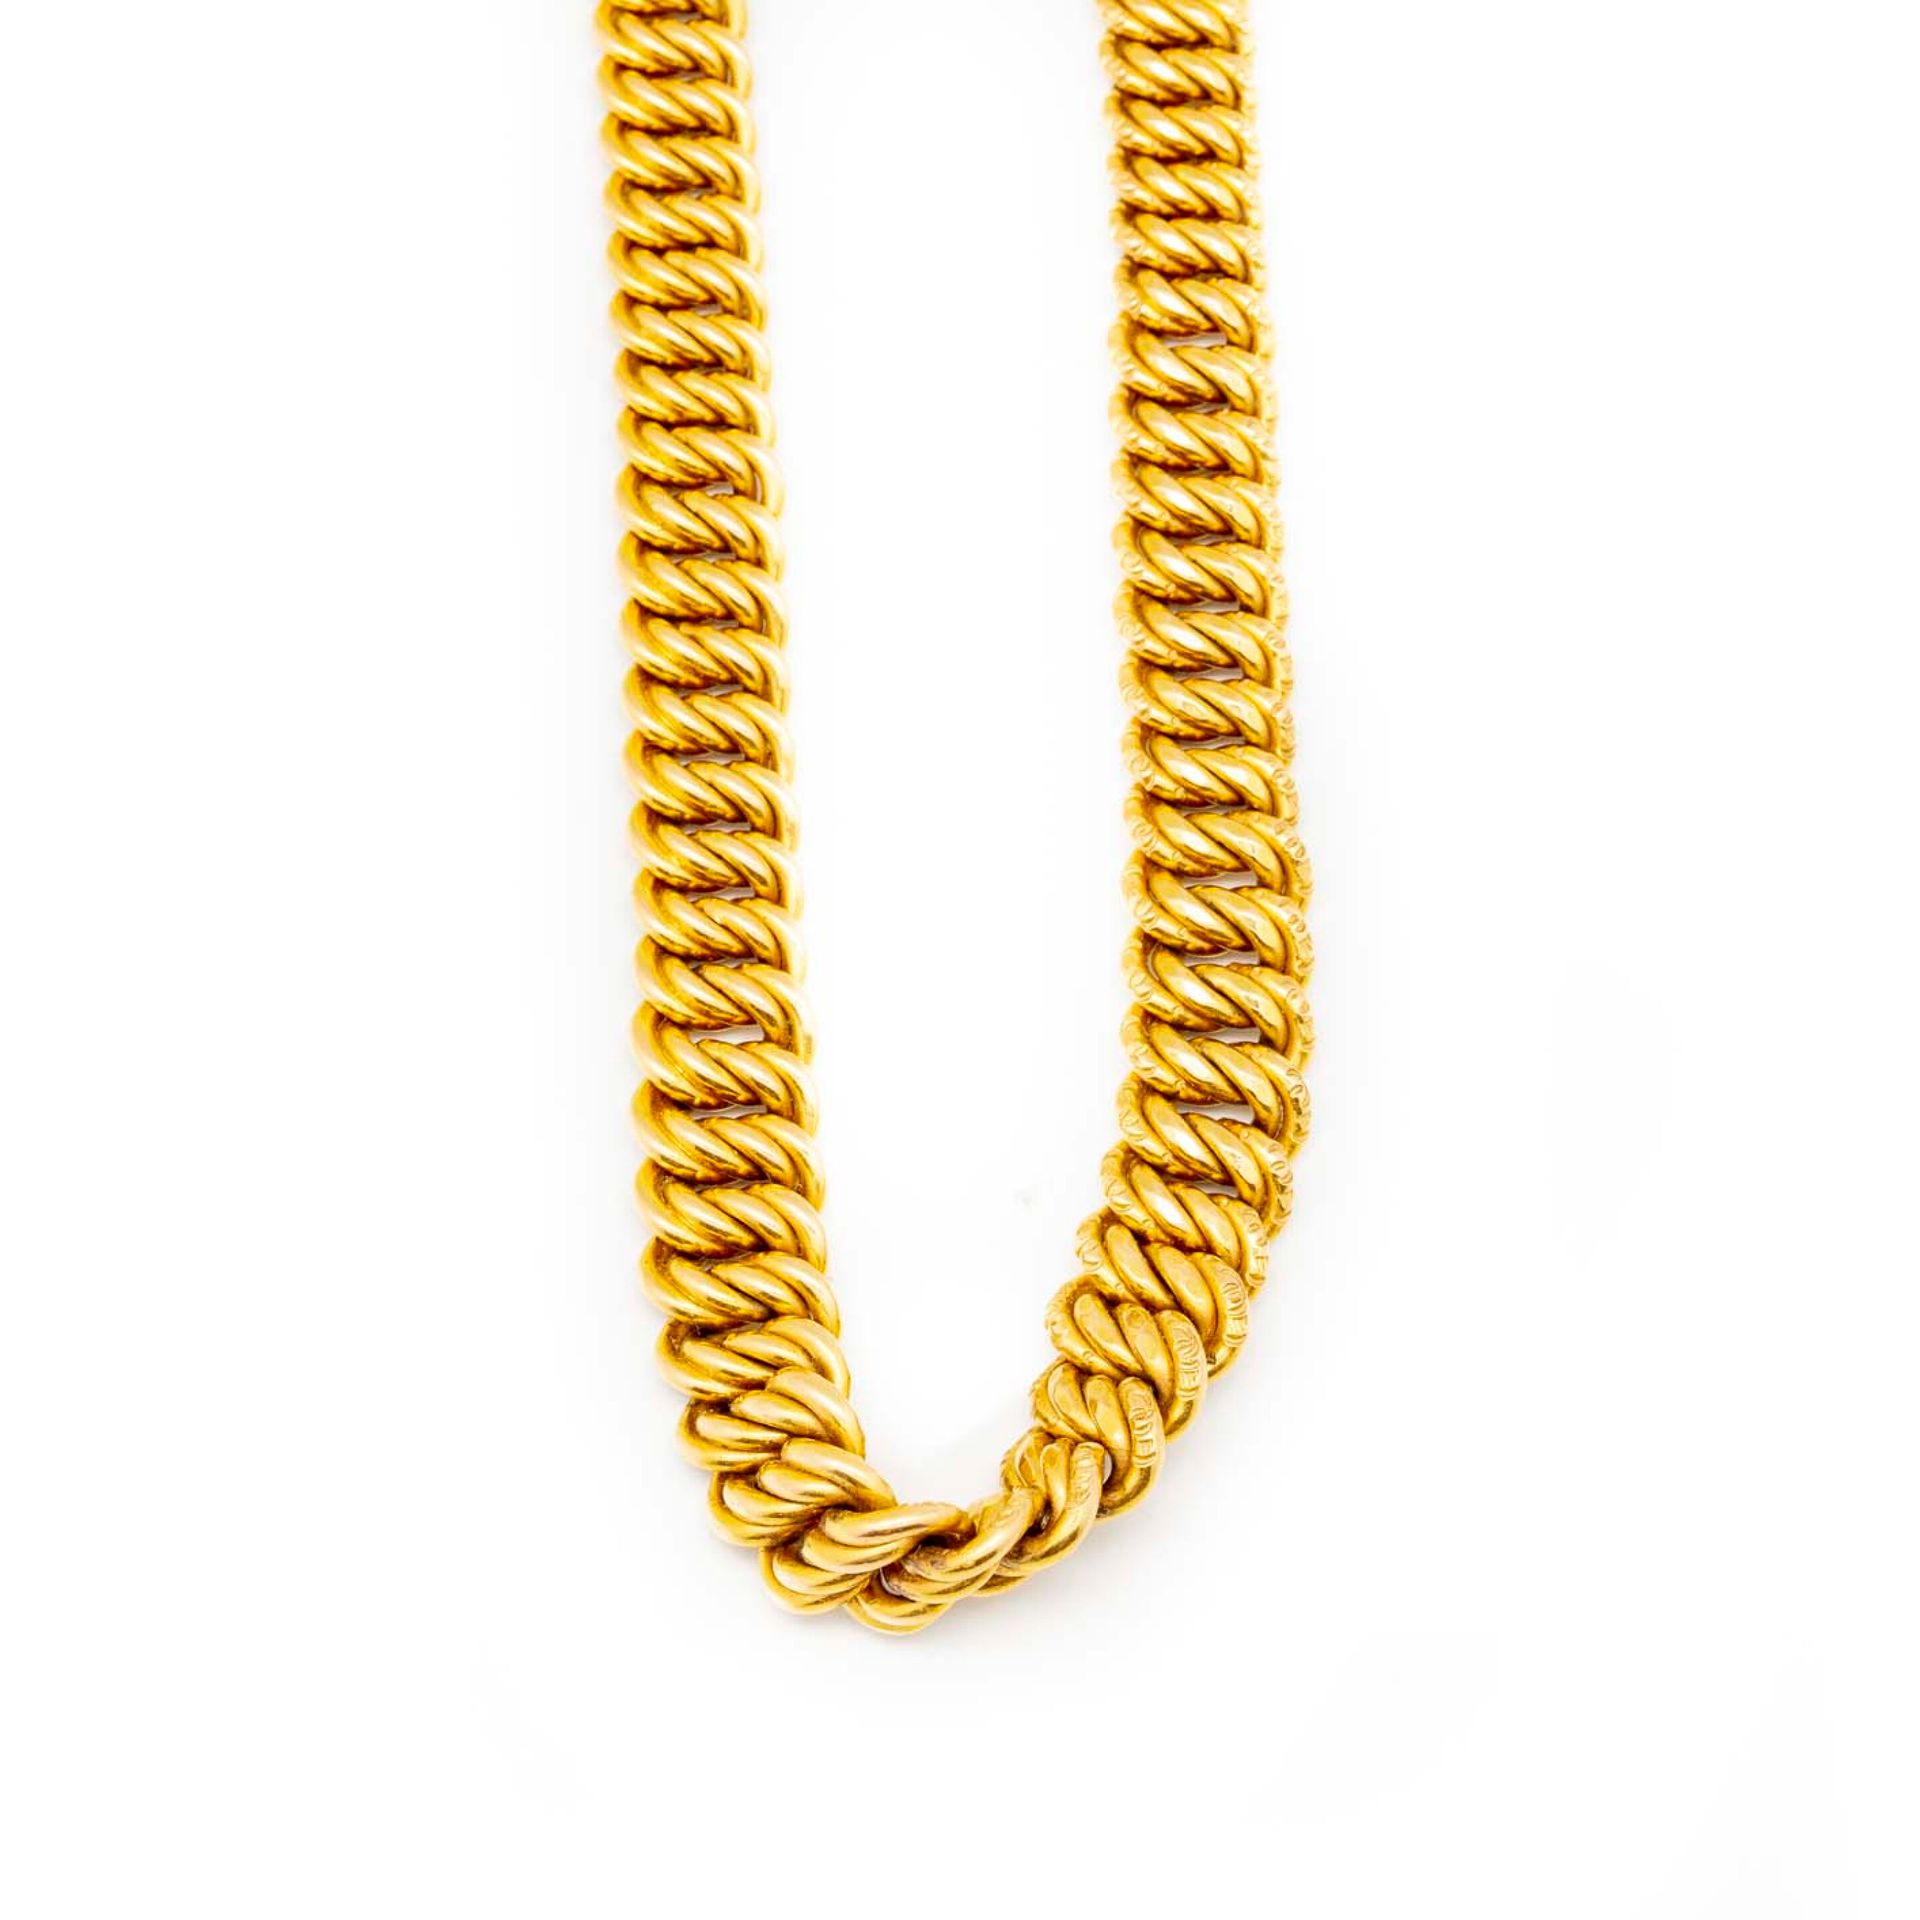 Null Collana in oro giallo con maglie articolate flessibili

Peso: 117 g.